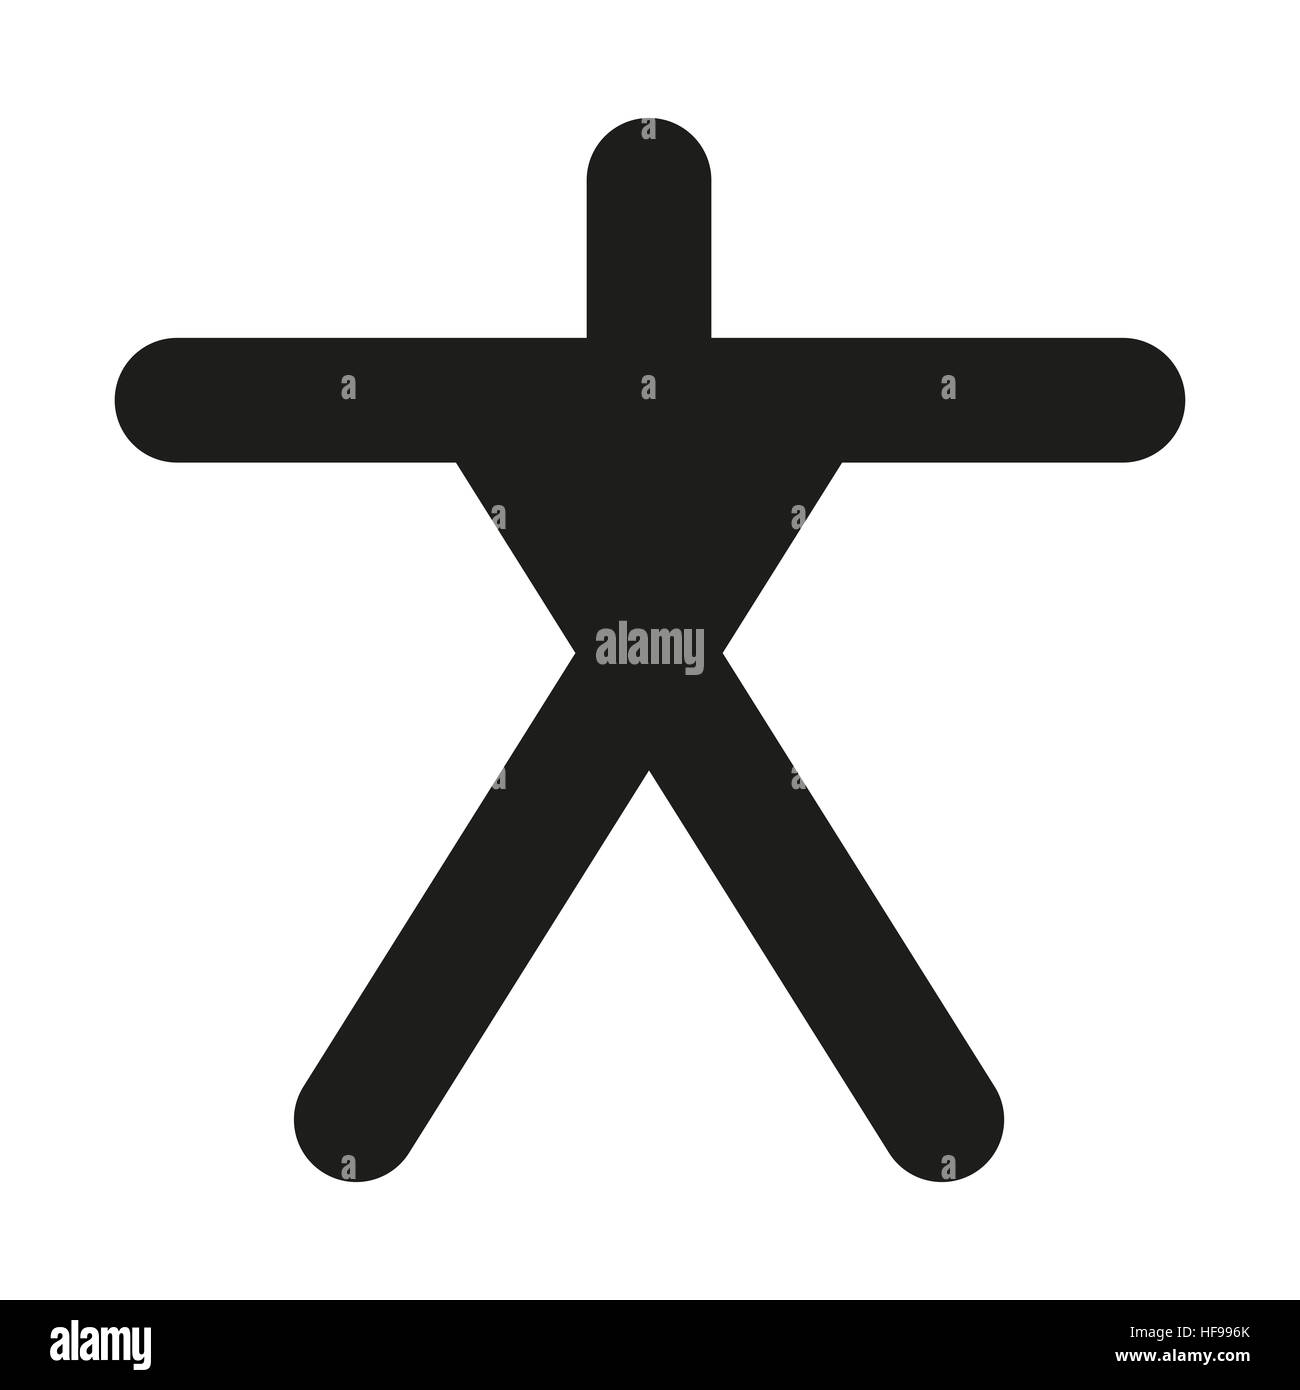 Simbolo di un essere umano silhouette, fatta di tre barre di lunghezza uguale e un quarto, ma più corti bar. Bianco e nero pittogramma. Foto Stock